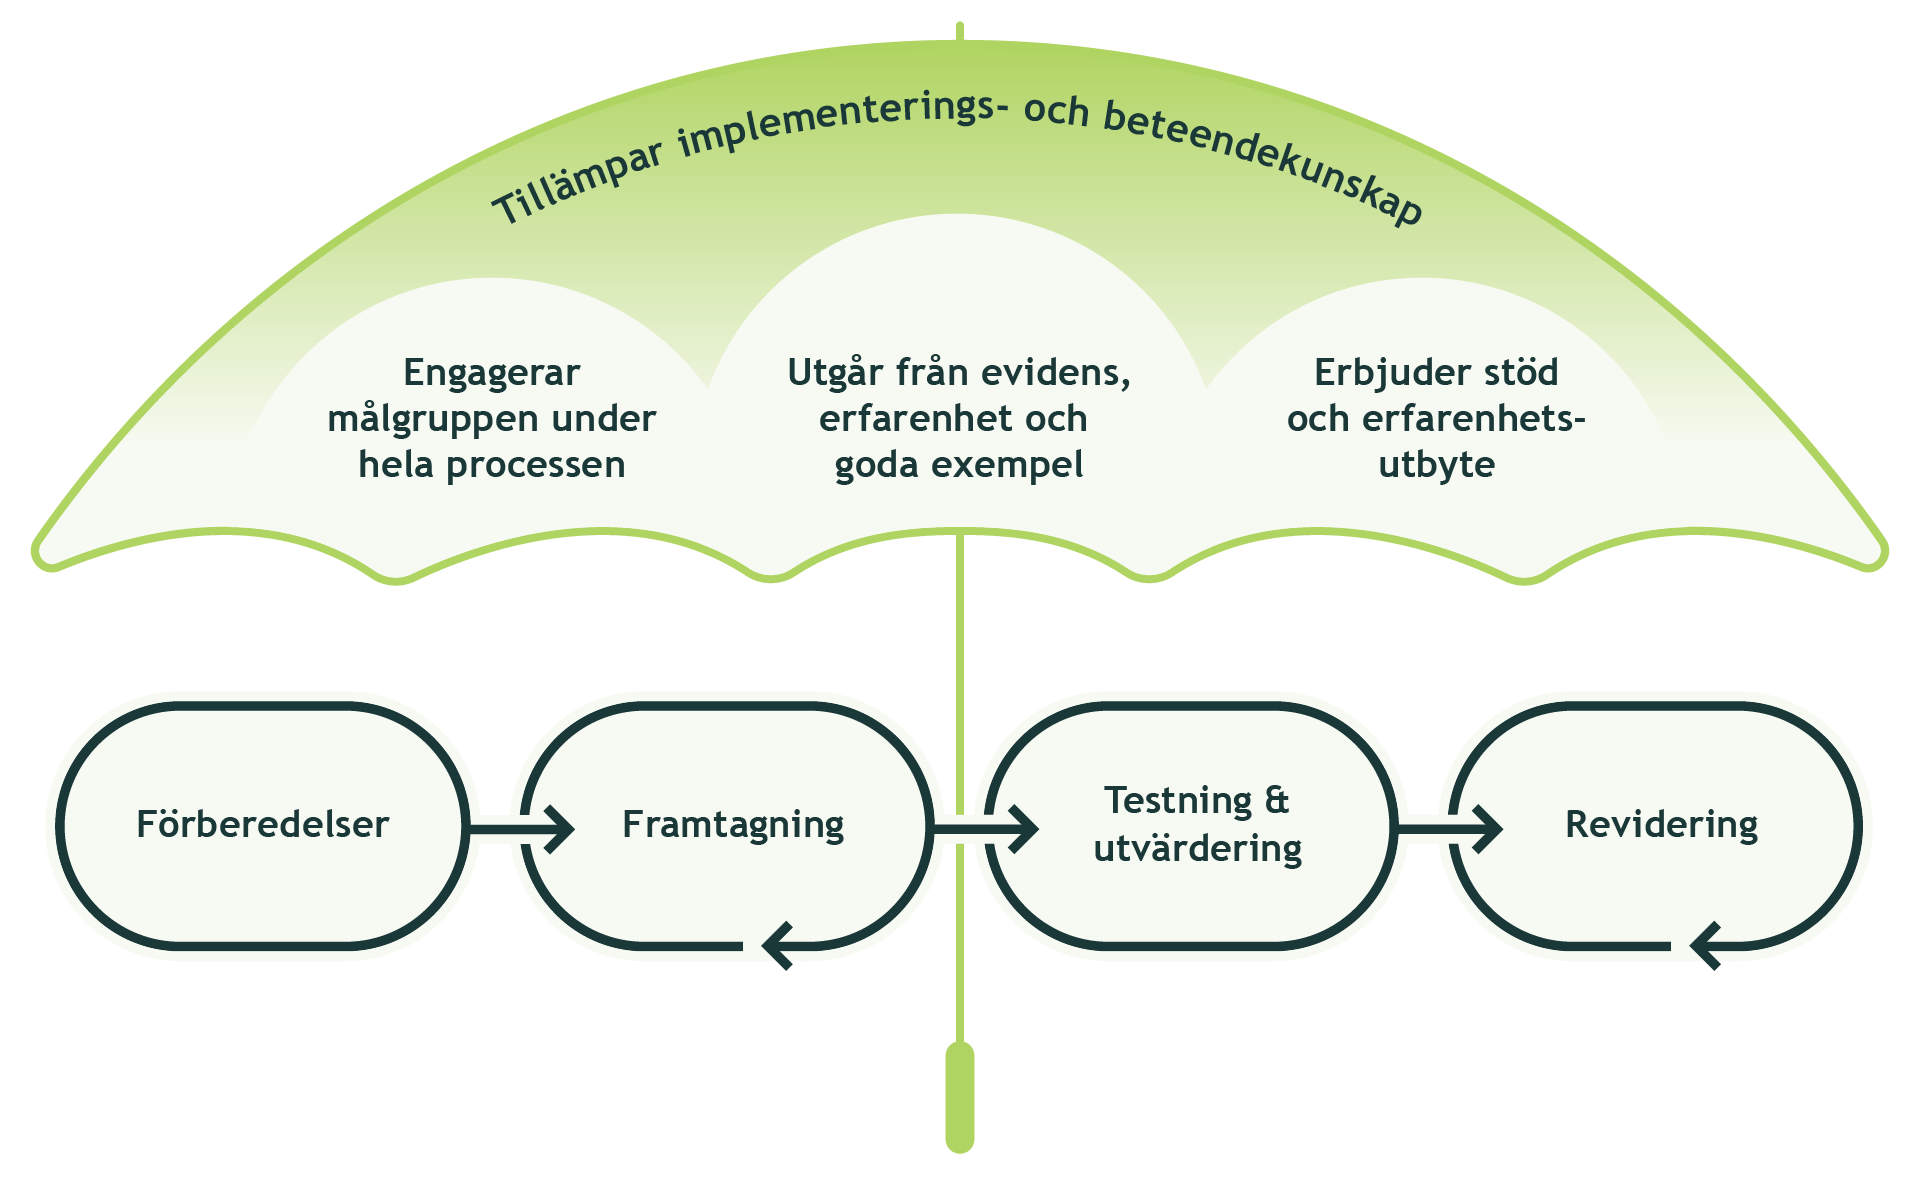 Bild som visar hur paraplyet implementerings och beteendekunskap med engagemang av målgrupp, hur man utgår från evidens och goda exempel  och erbjuder stöd och erfarenhetsutbyte ligger över kriterieprocessens fyra delar.